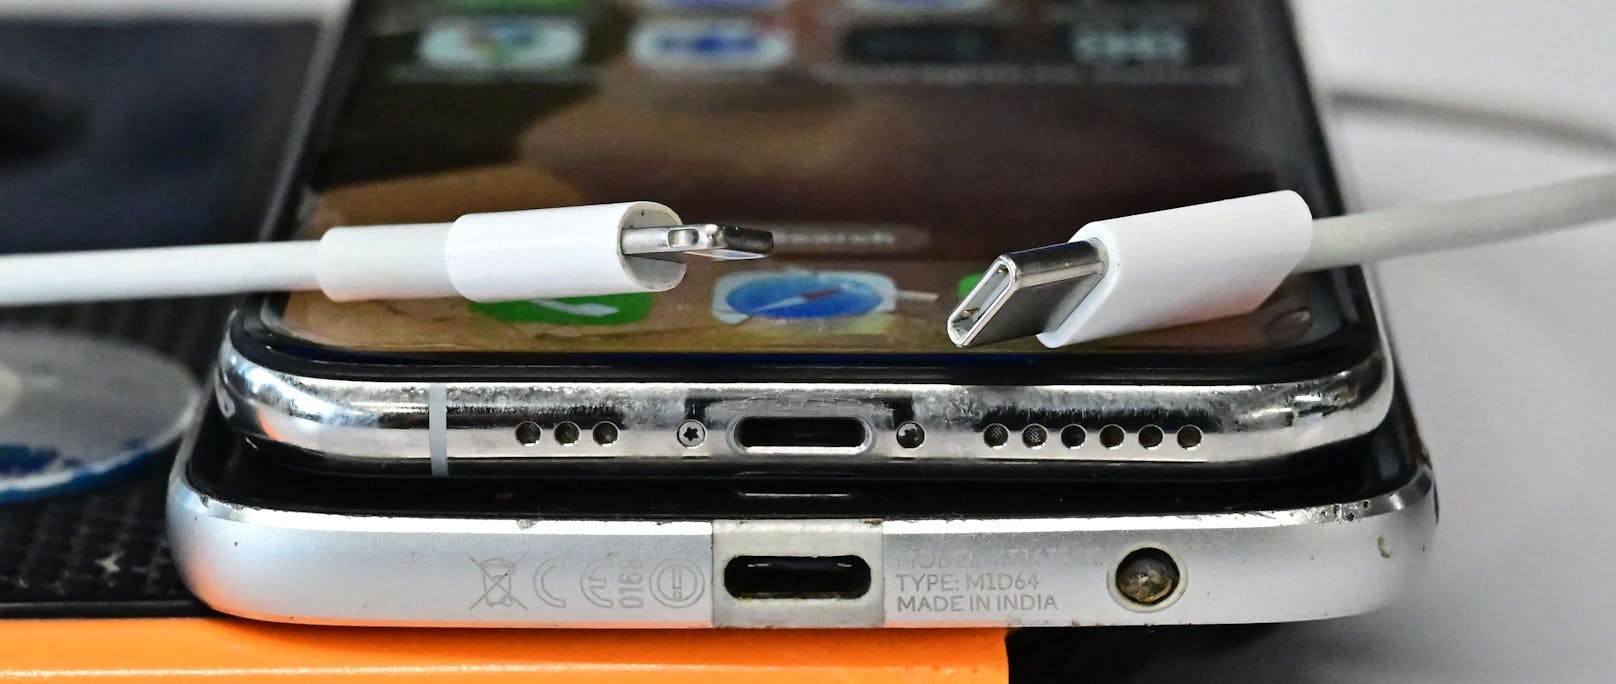 Endlich laden alle Handys mit einem Kabel: Der neue USB-C Anschluss (R) ersetzt den traditionellen Apple Lightning Port.&nbsp;